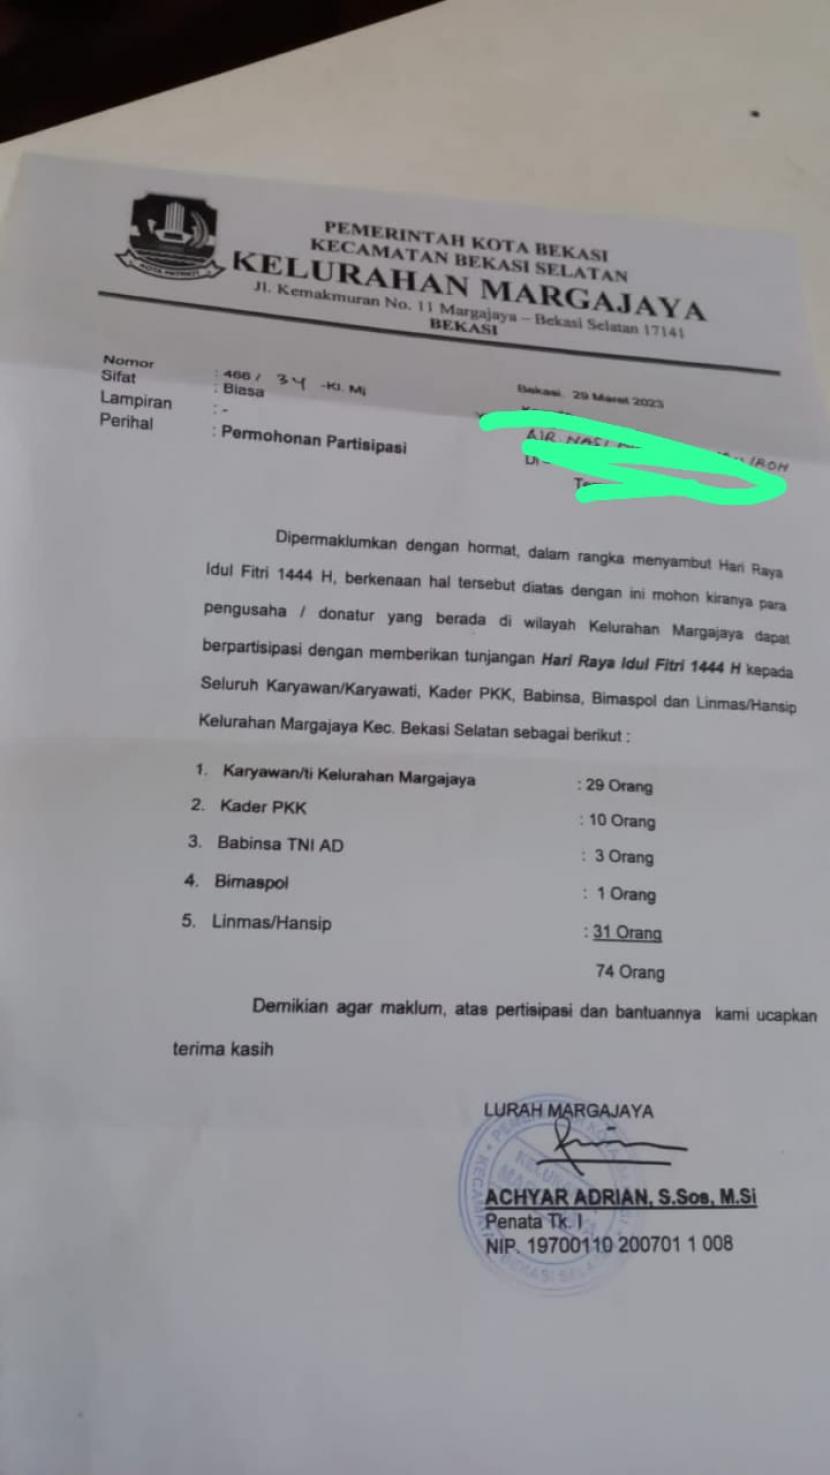 Lurah Margajaya Kota Bekasi Achyar Adrian membuat surat THR yang ditujukan kepada para pengusaha di Kota Bekasi.